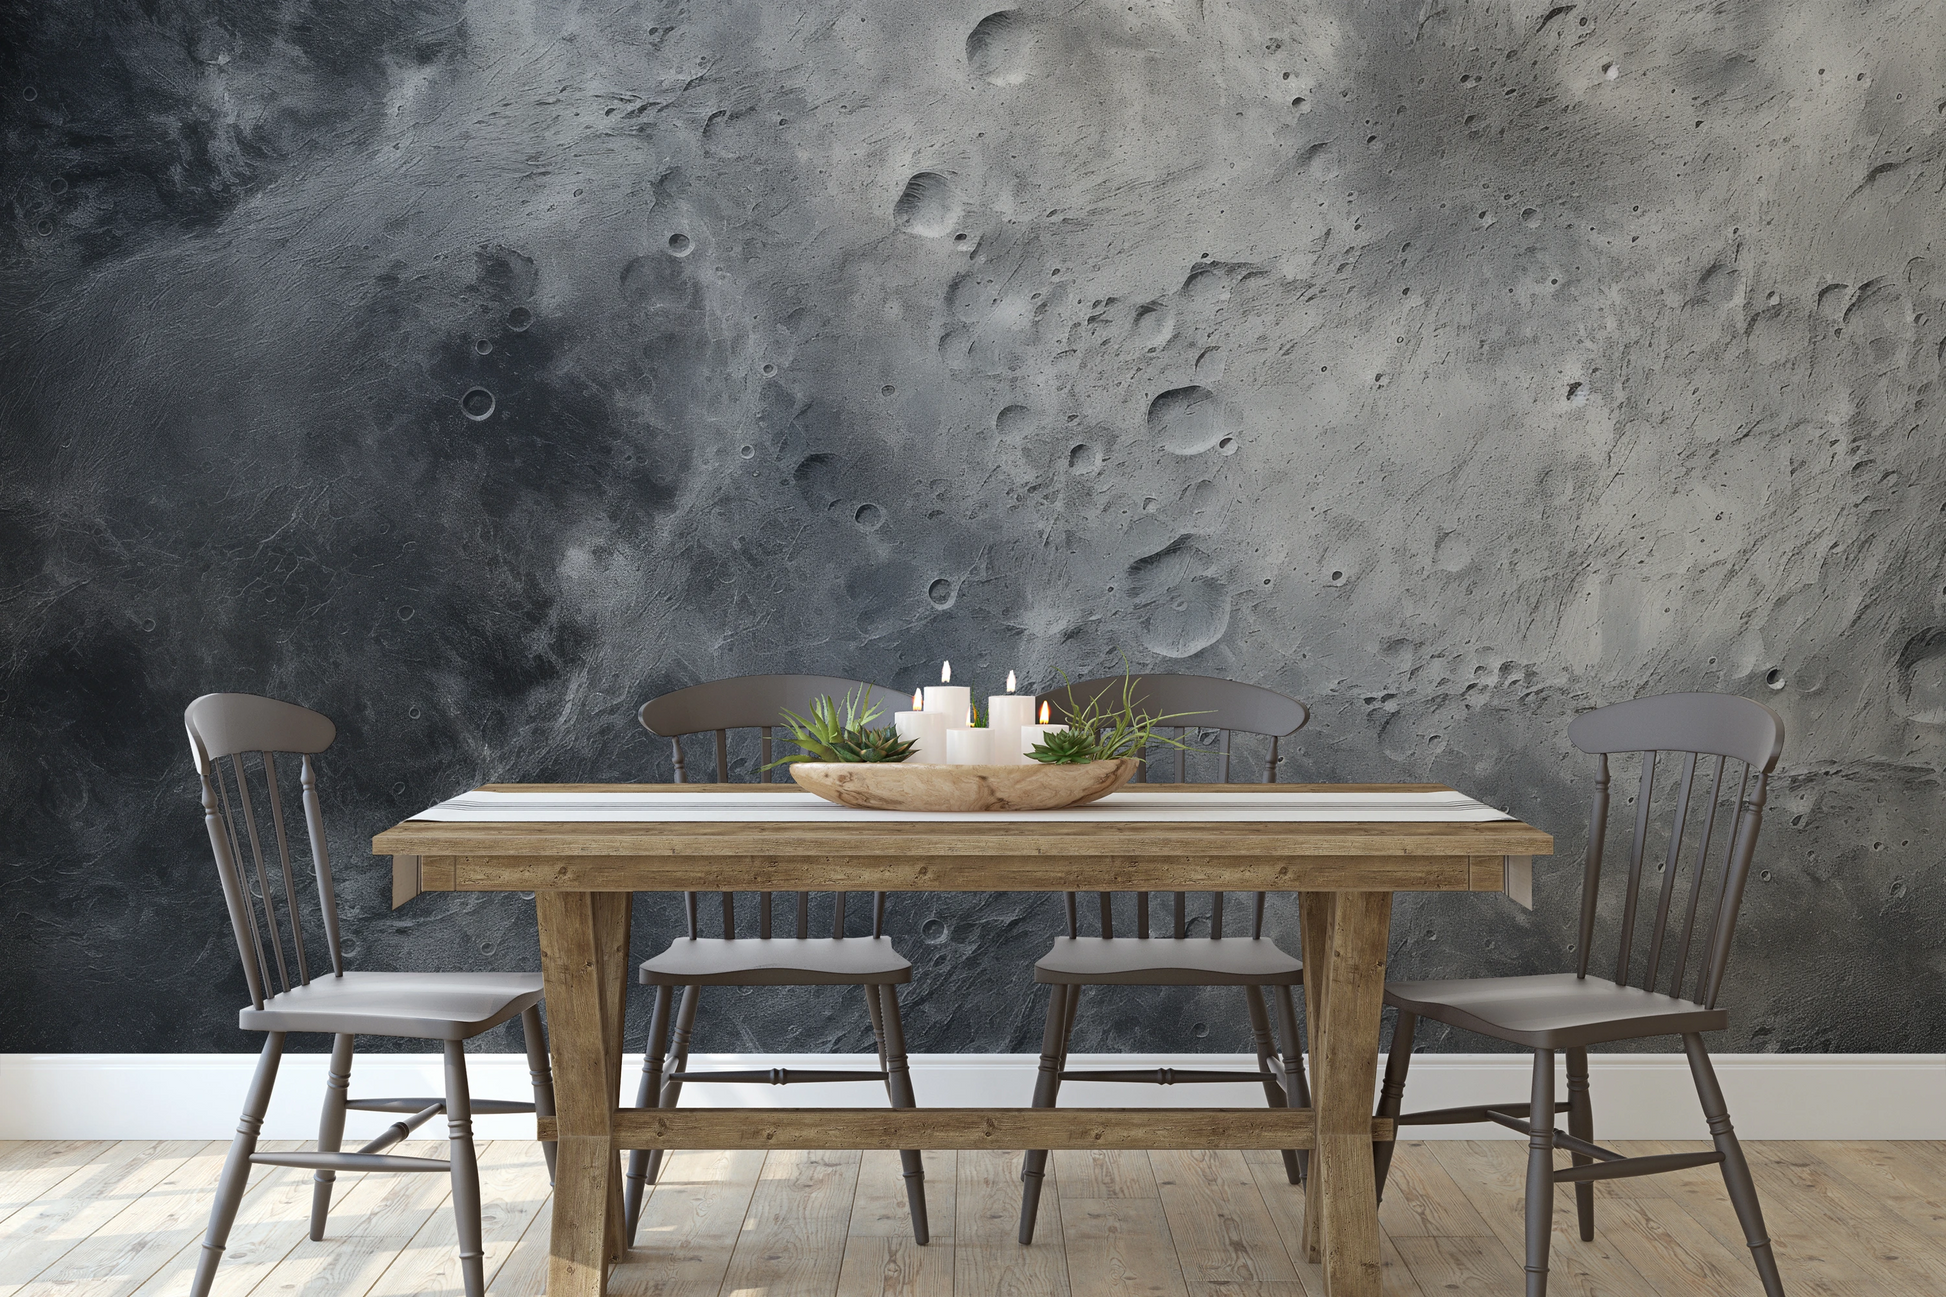 Wzór fototapety artystycznej o nazwie Moon's Monochrome #2 pokazanej w aranżacji wnętrza.